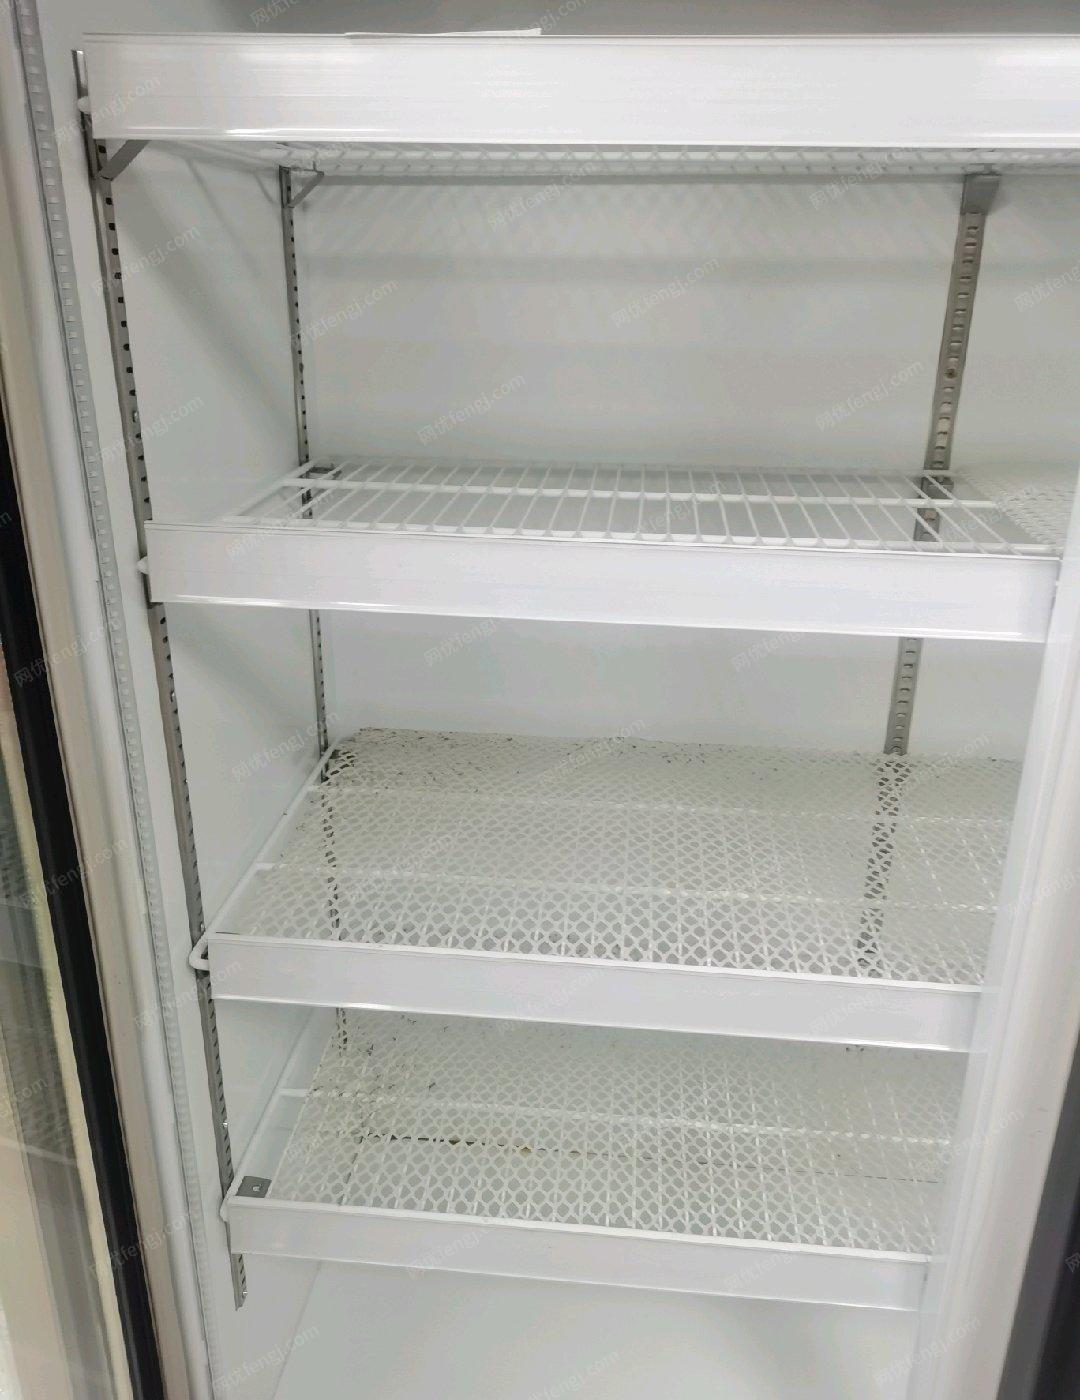 广东东莞多出一台冰箱，想出售。